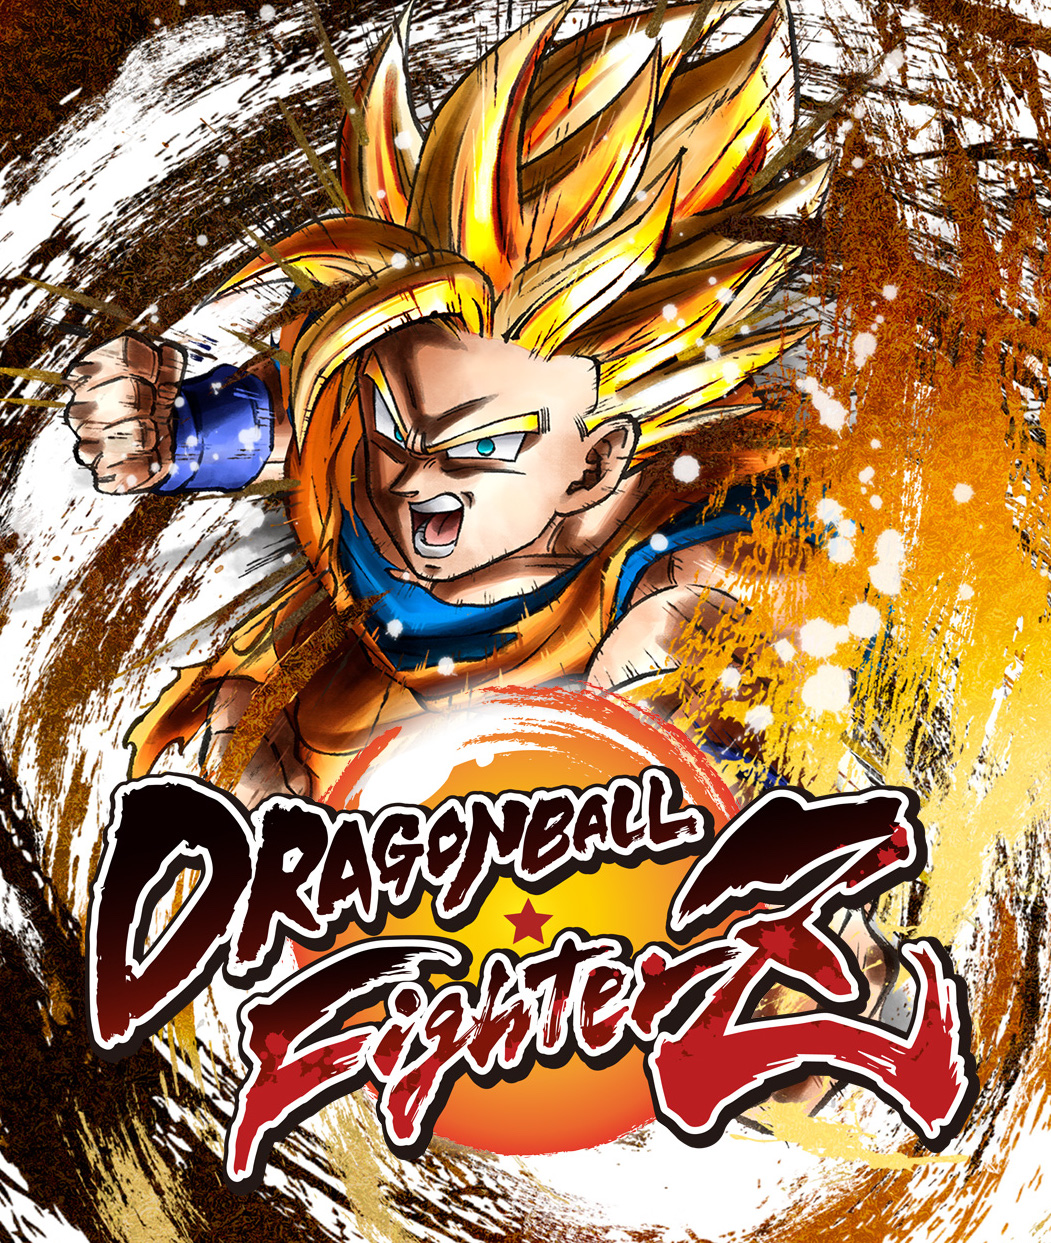 Dragon Ball Z: Kakarot - Gohan vs Majin Buu Full Fight (DBZ Kakarot 2020)  PS4 Pro 